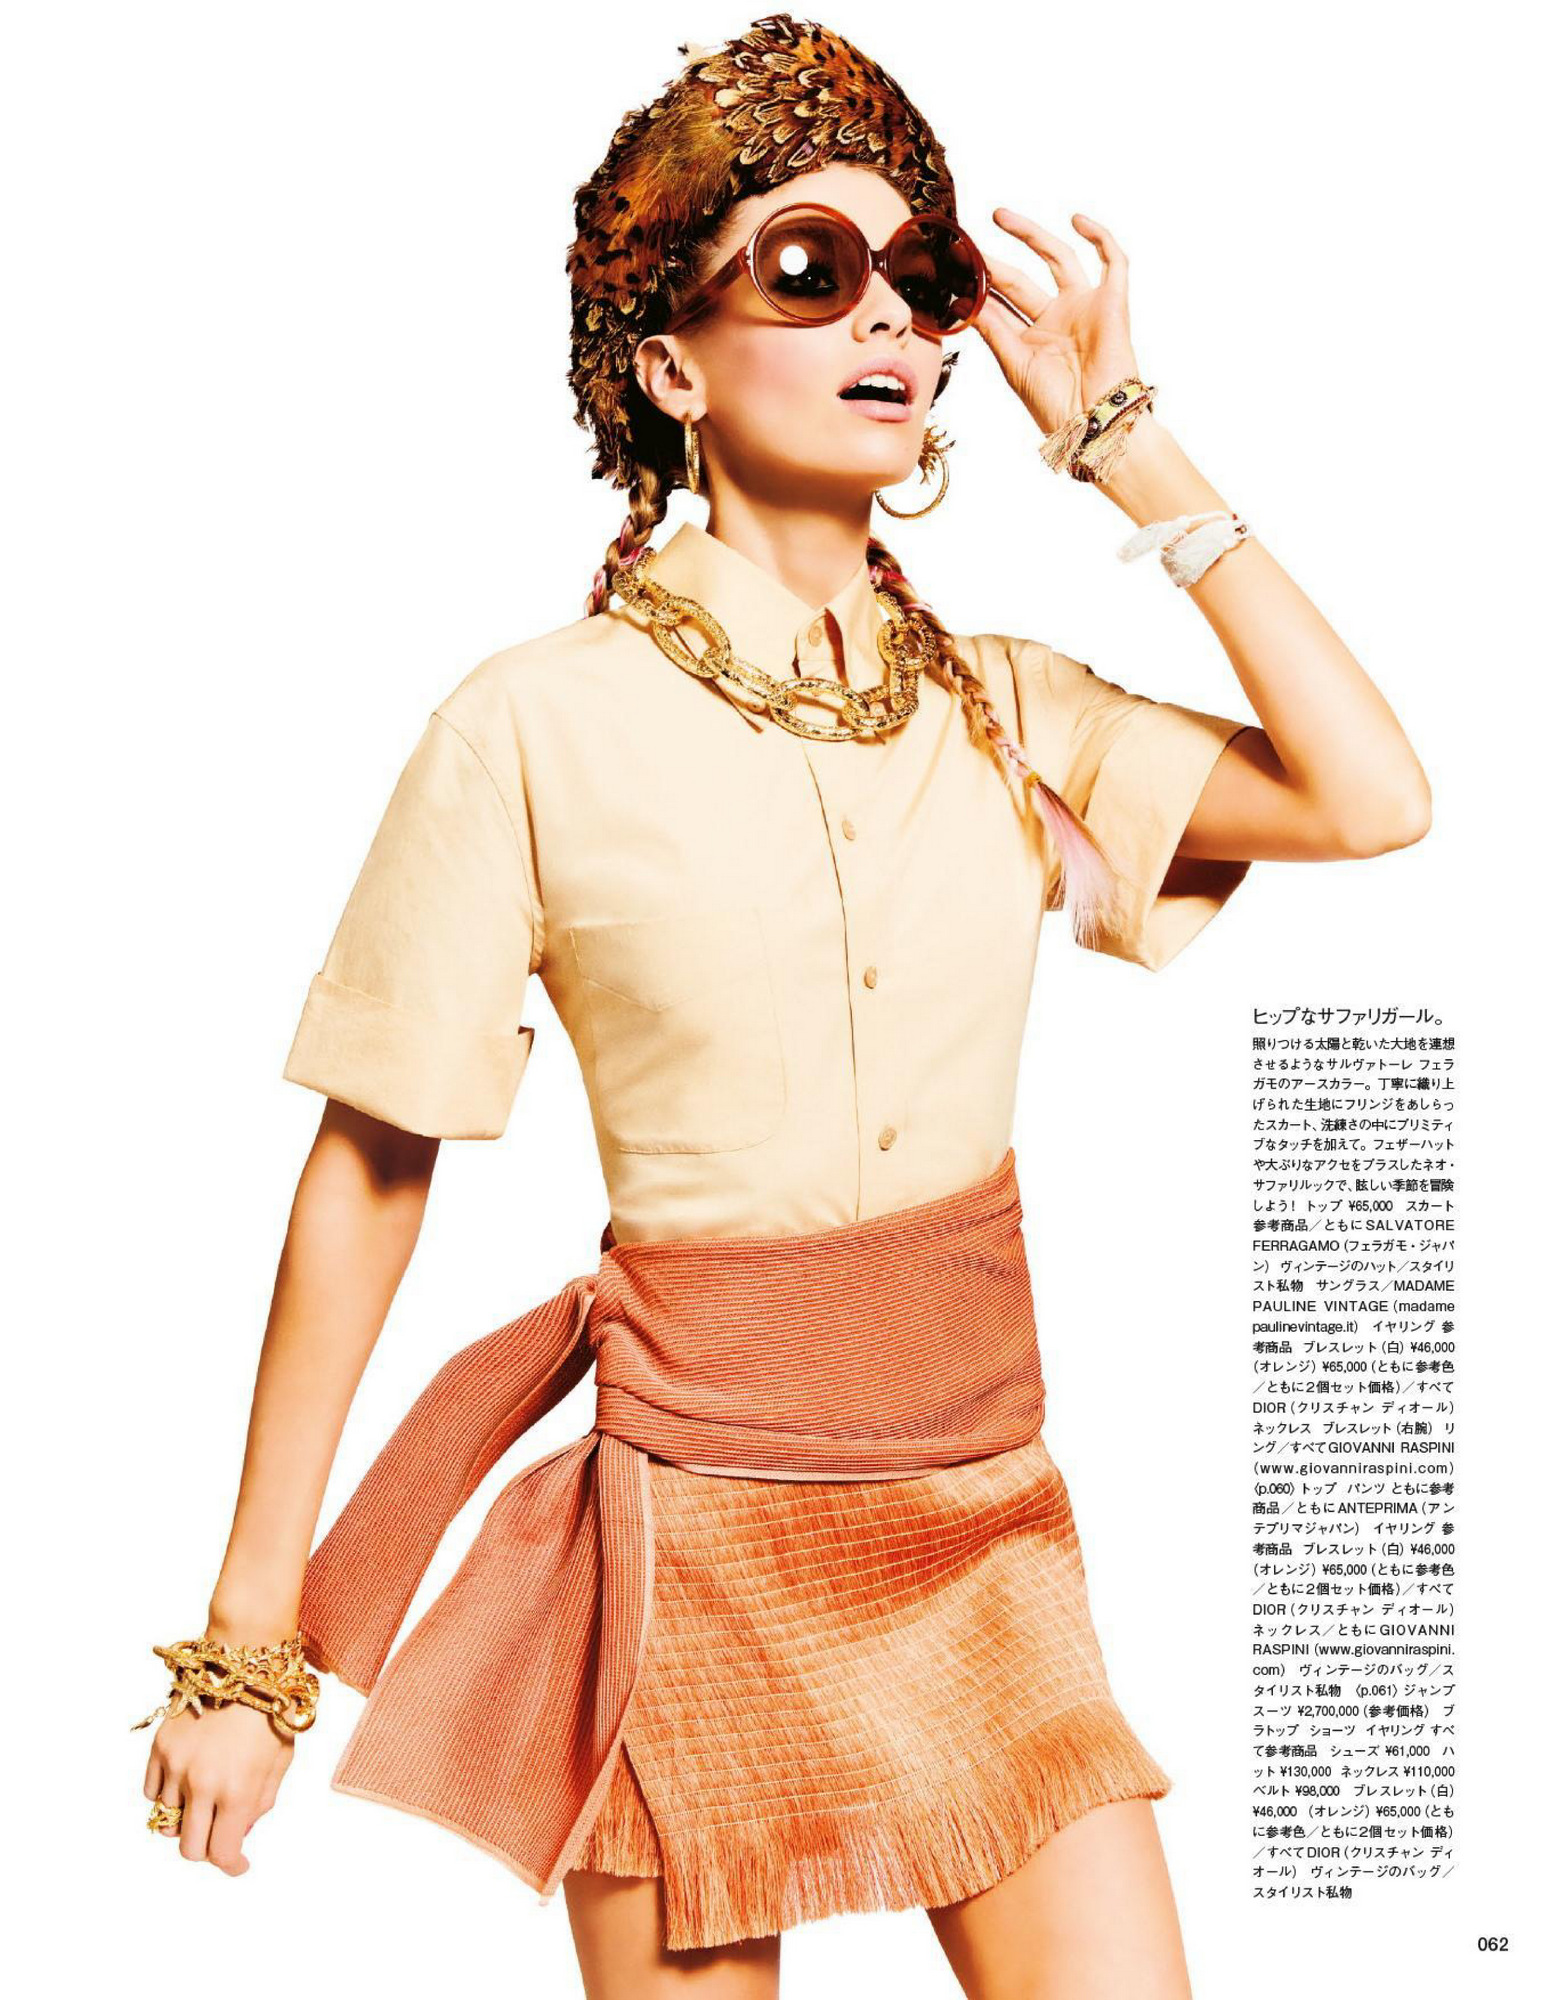 Fotos n°16 : Stella Maxwell Beachin' it For Vogue!